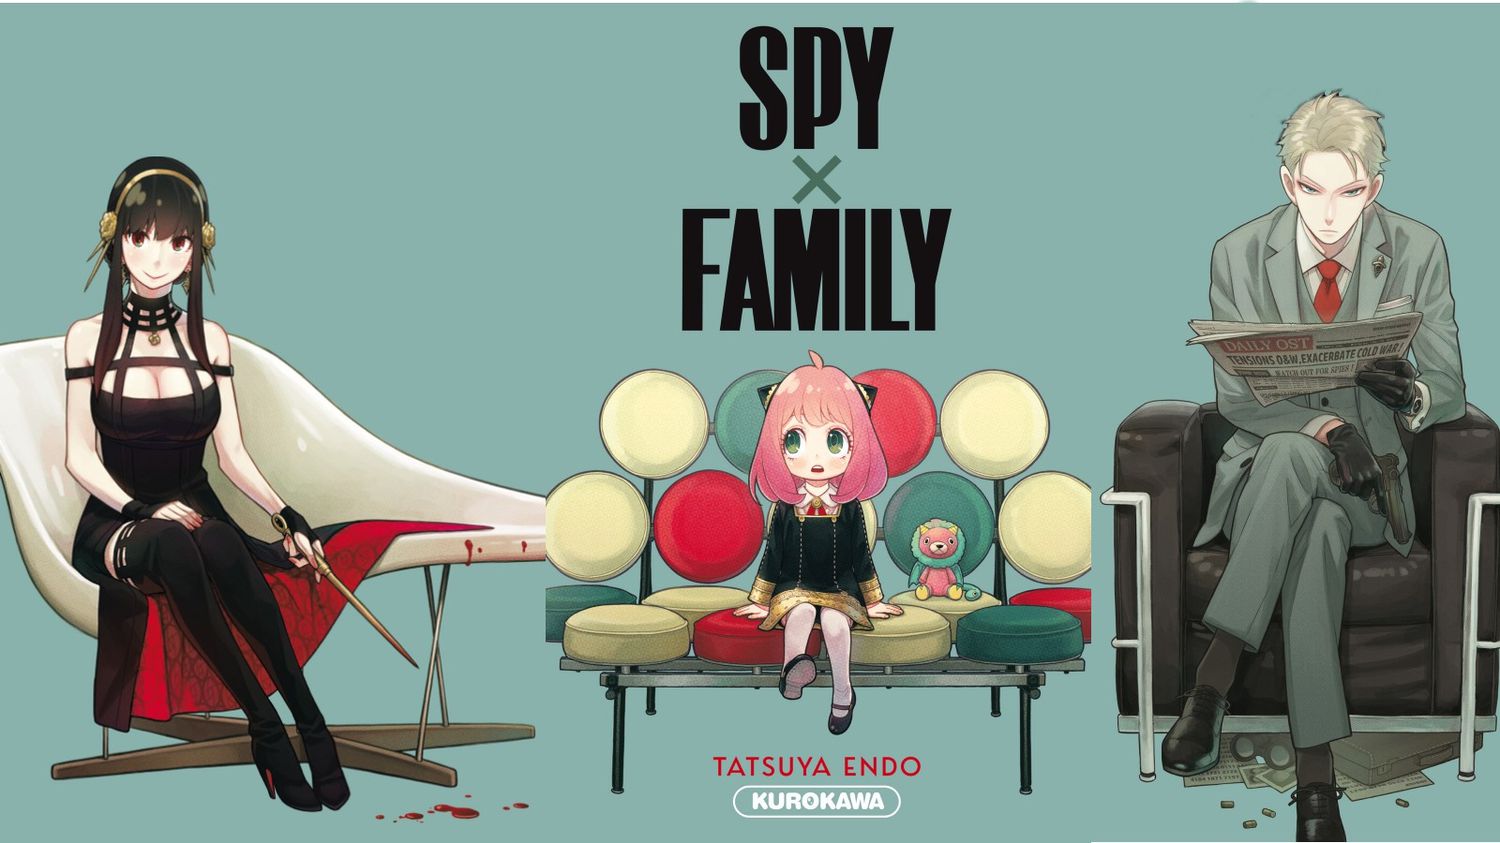 phpFO9eVo L'anime Spy x Family : une famille tout sauf ordinaire